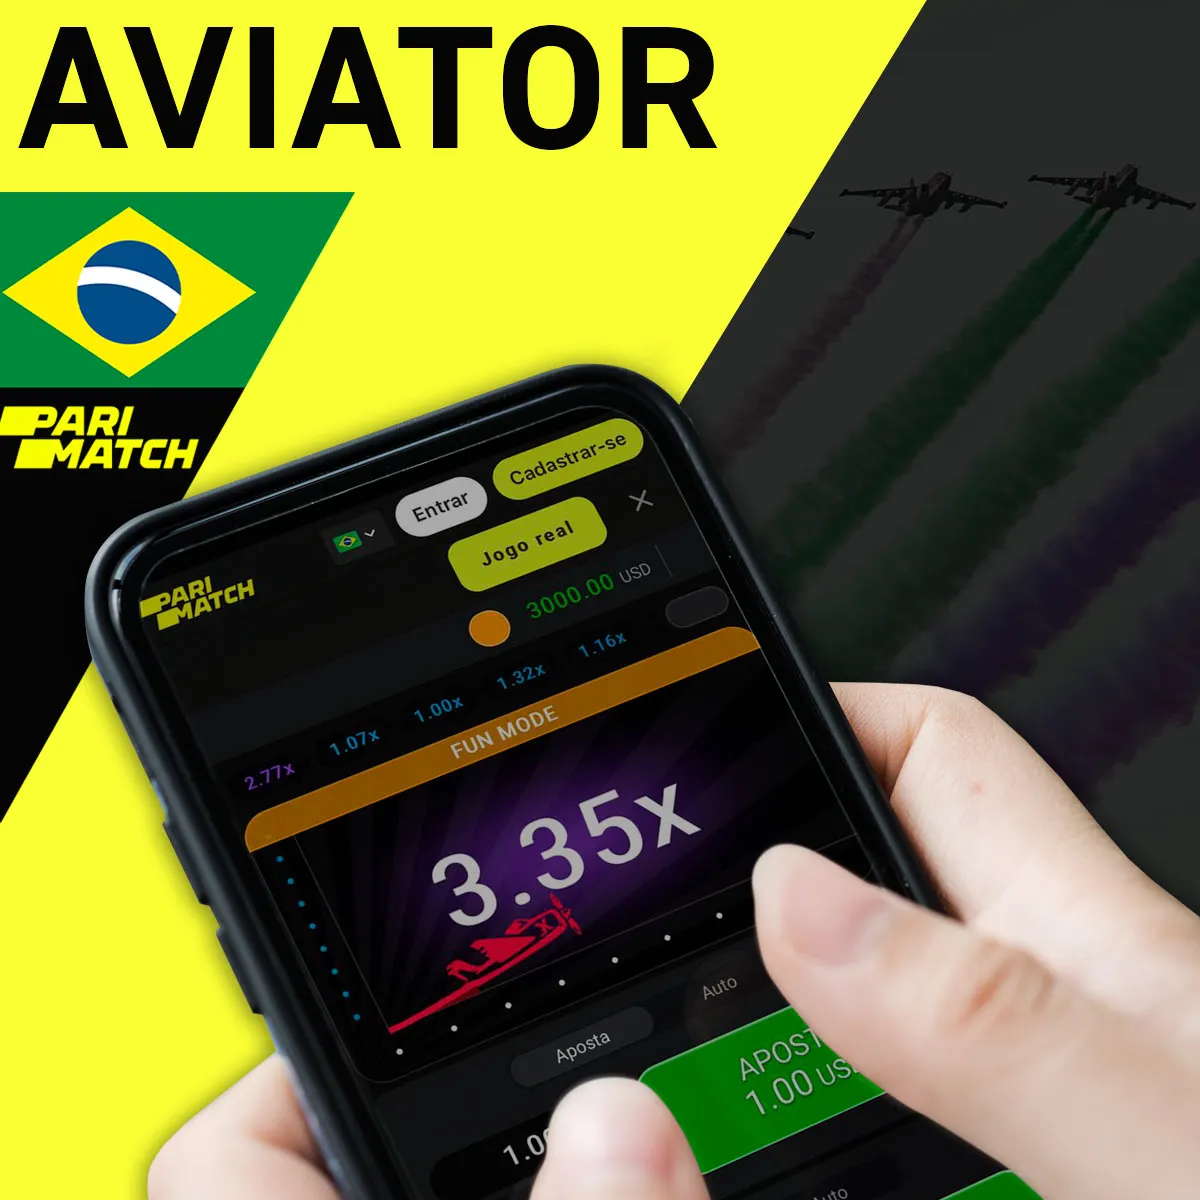 Popular jogo de cassino Aviator na casa de apostas Parimatch no Brasil